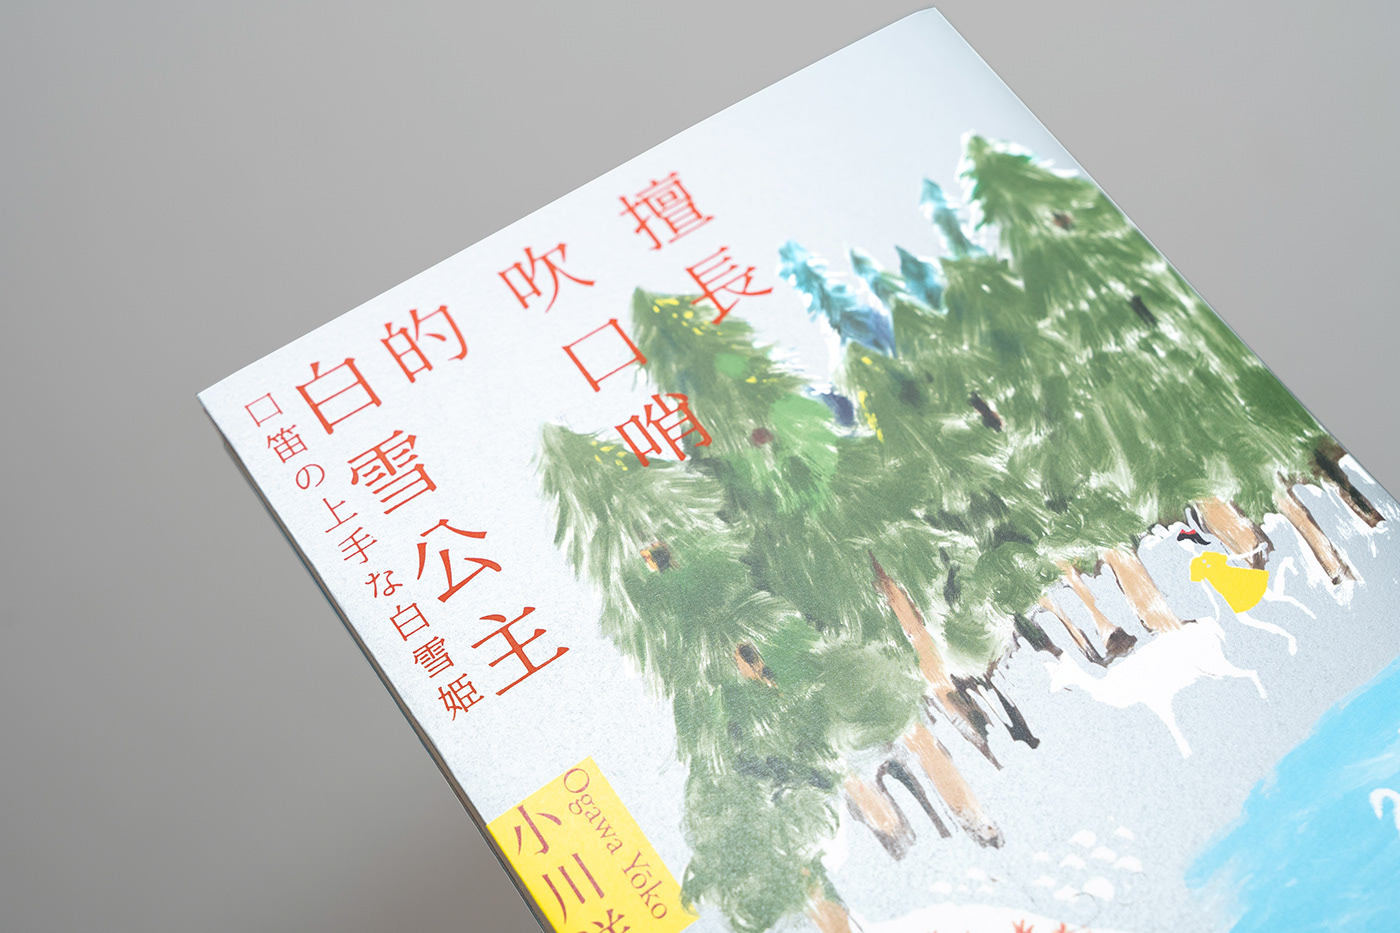 書封設計 book cover book cover design art 封面設計 小川洋子 木馬文化